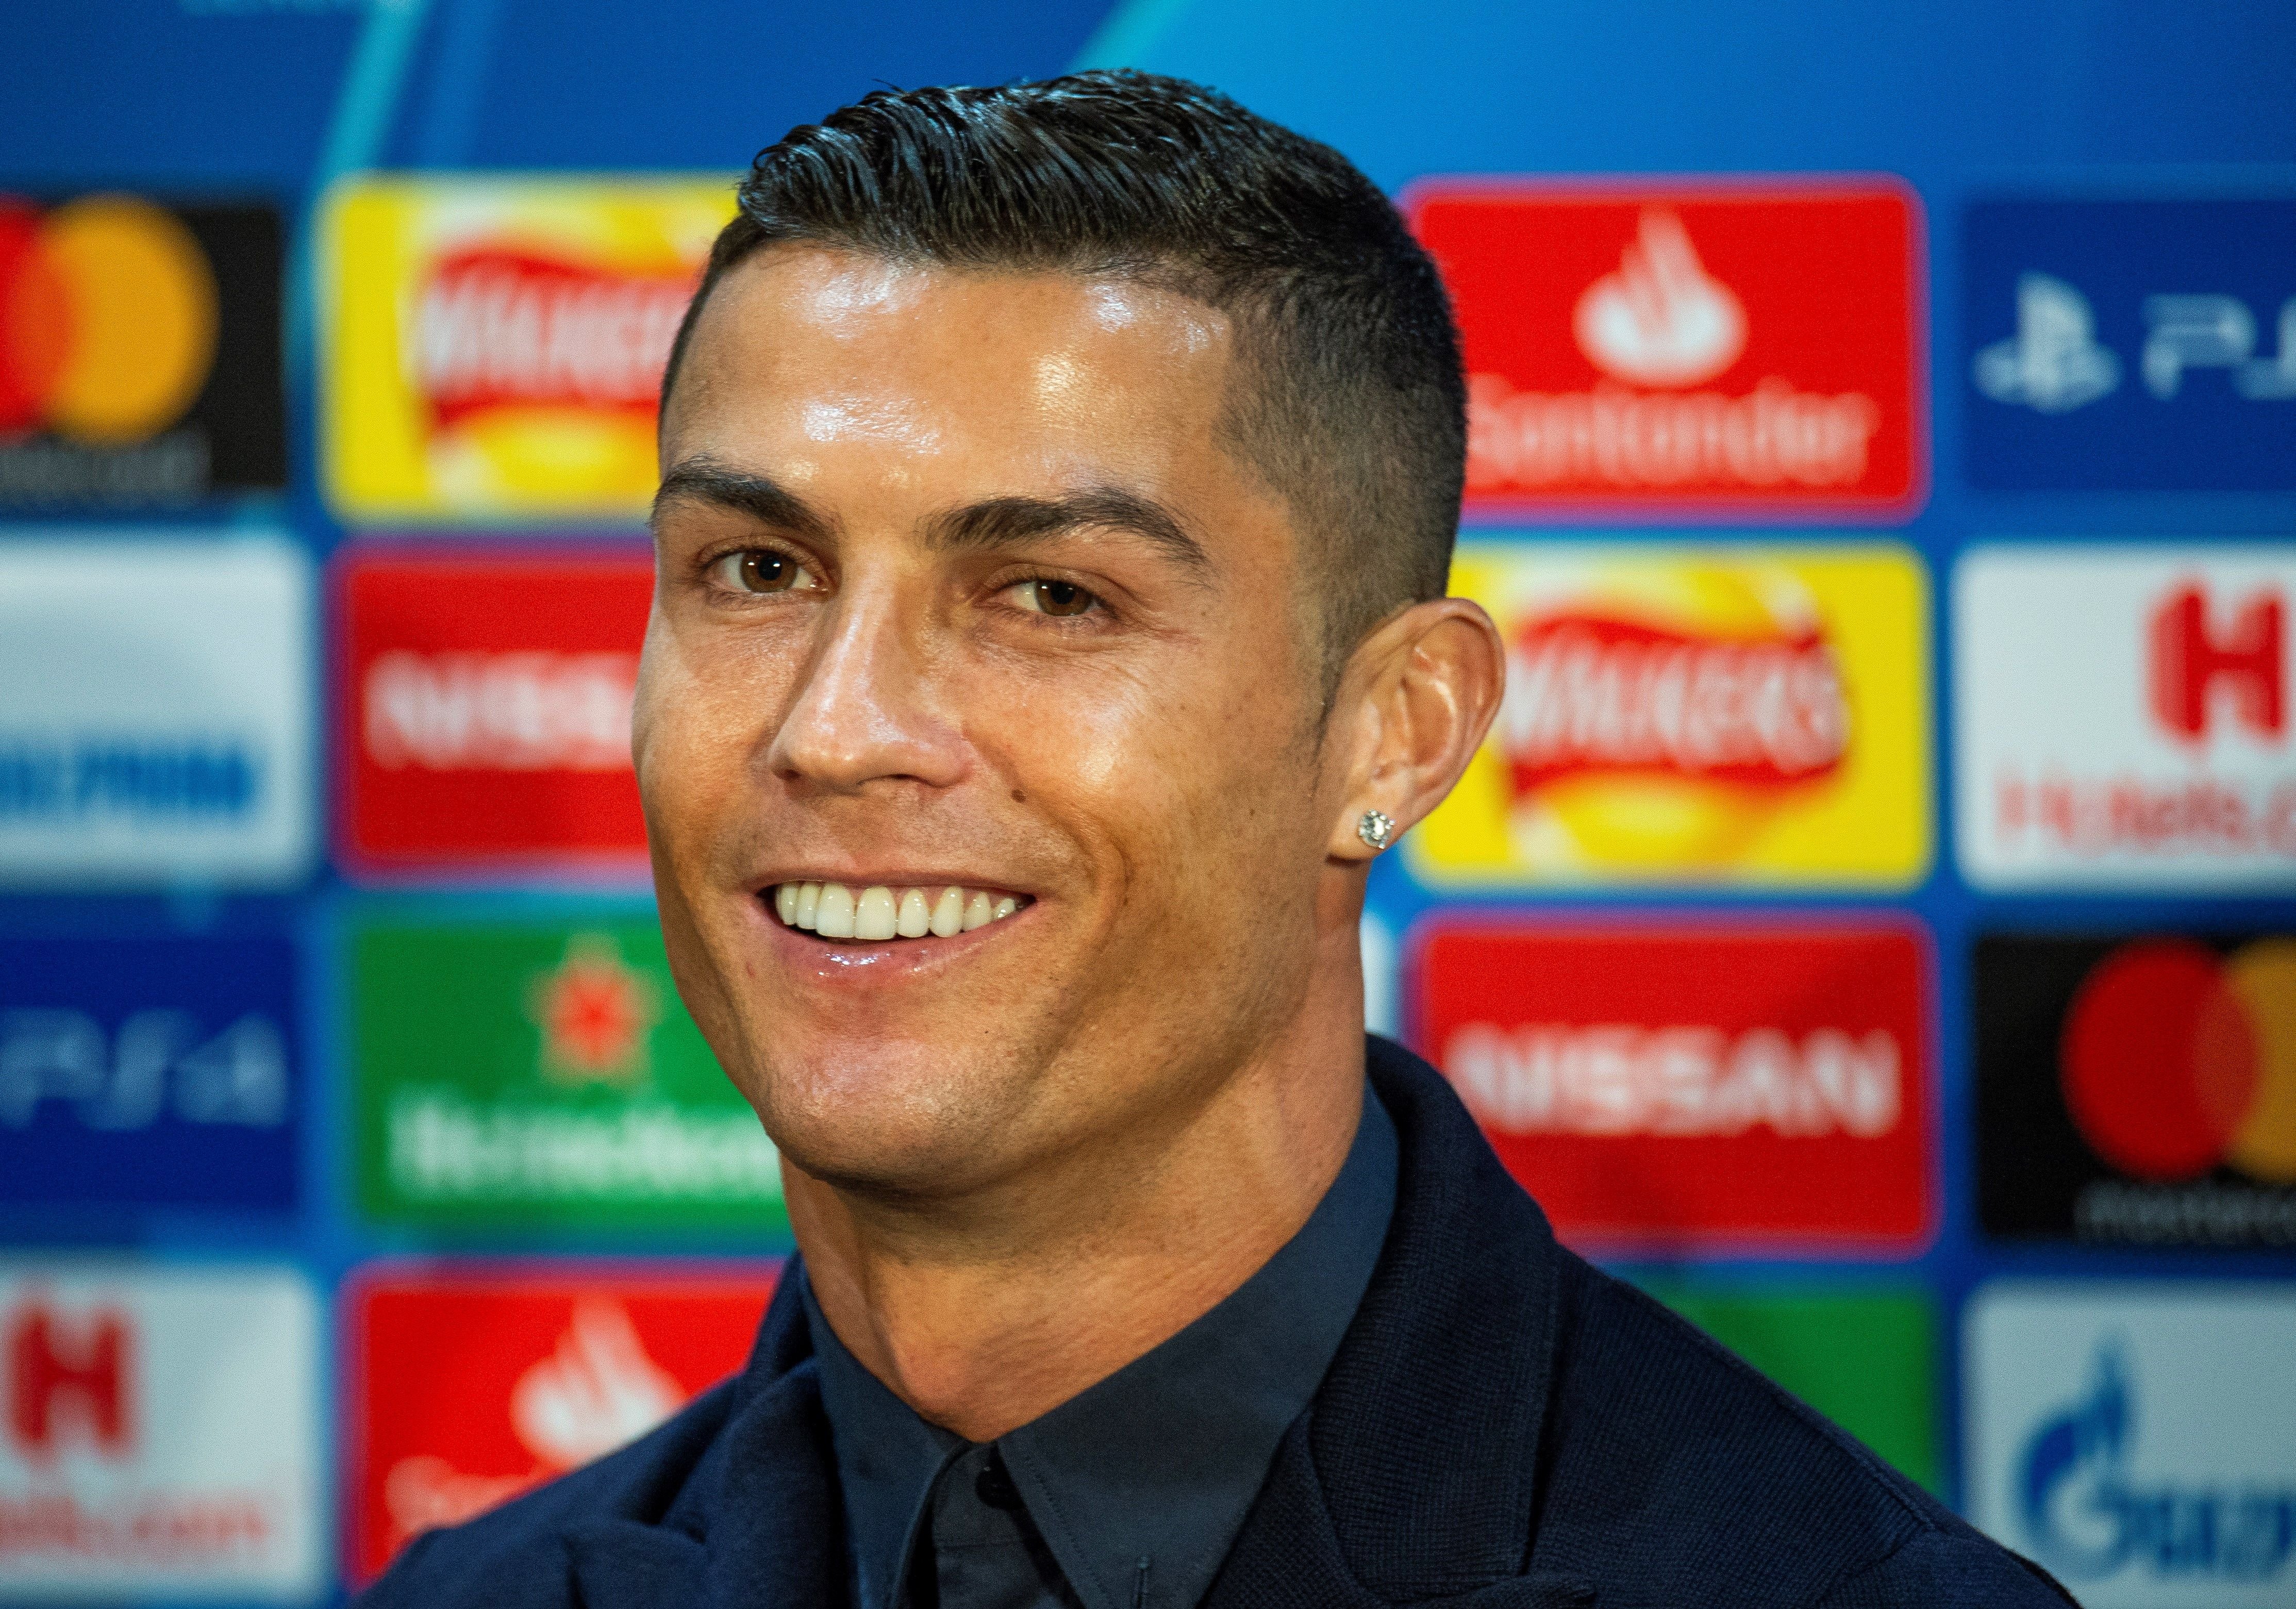 La nova adquisició de Cristiano Ronaldo valorada en 2 milions d'euros